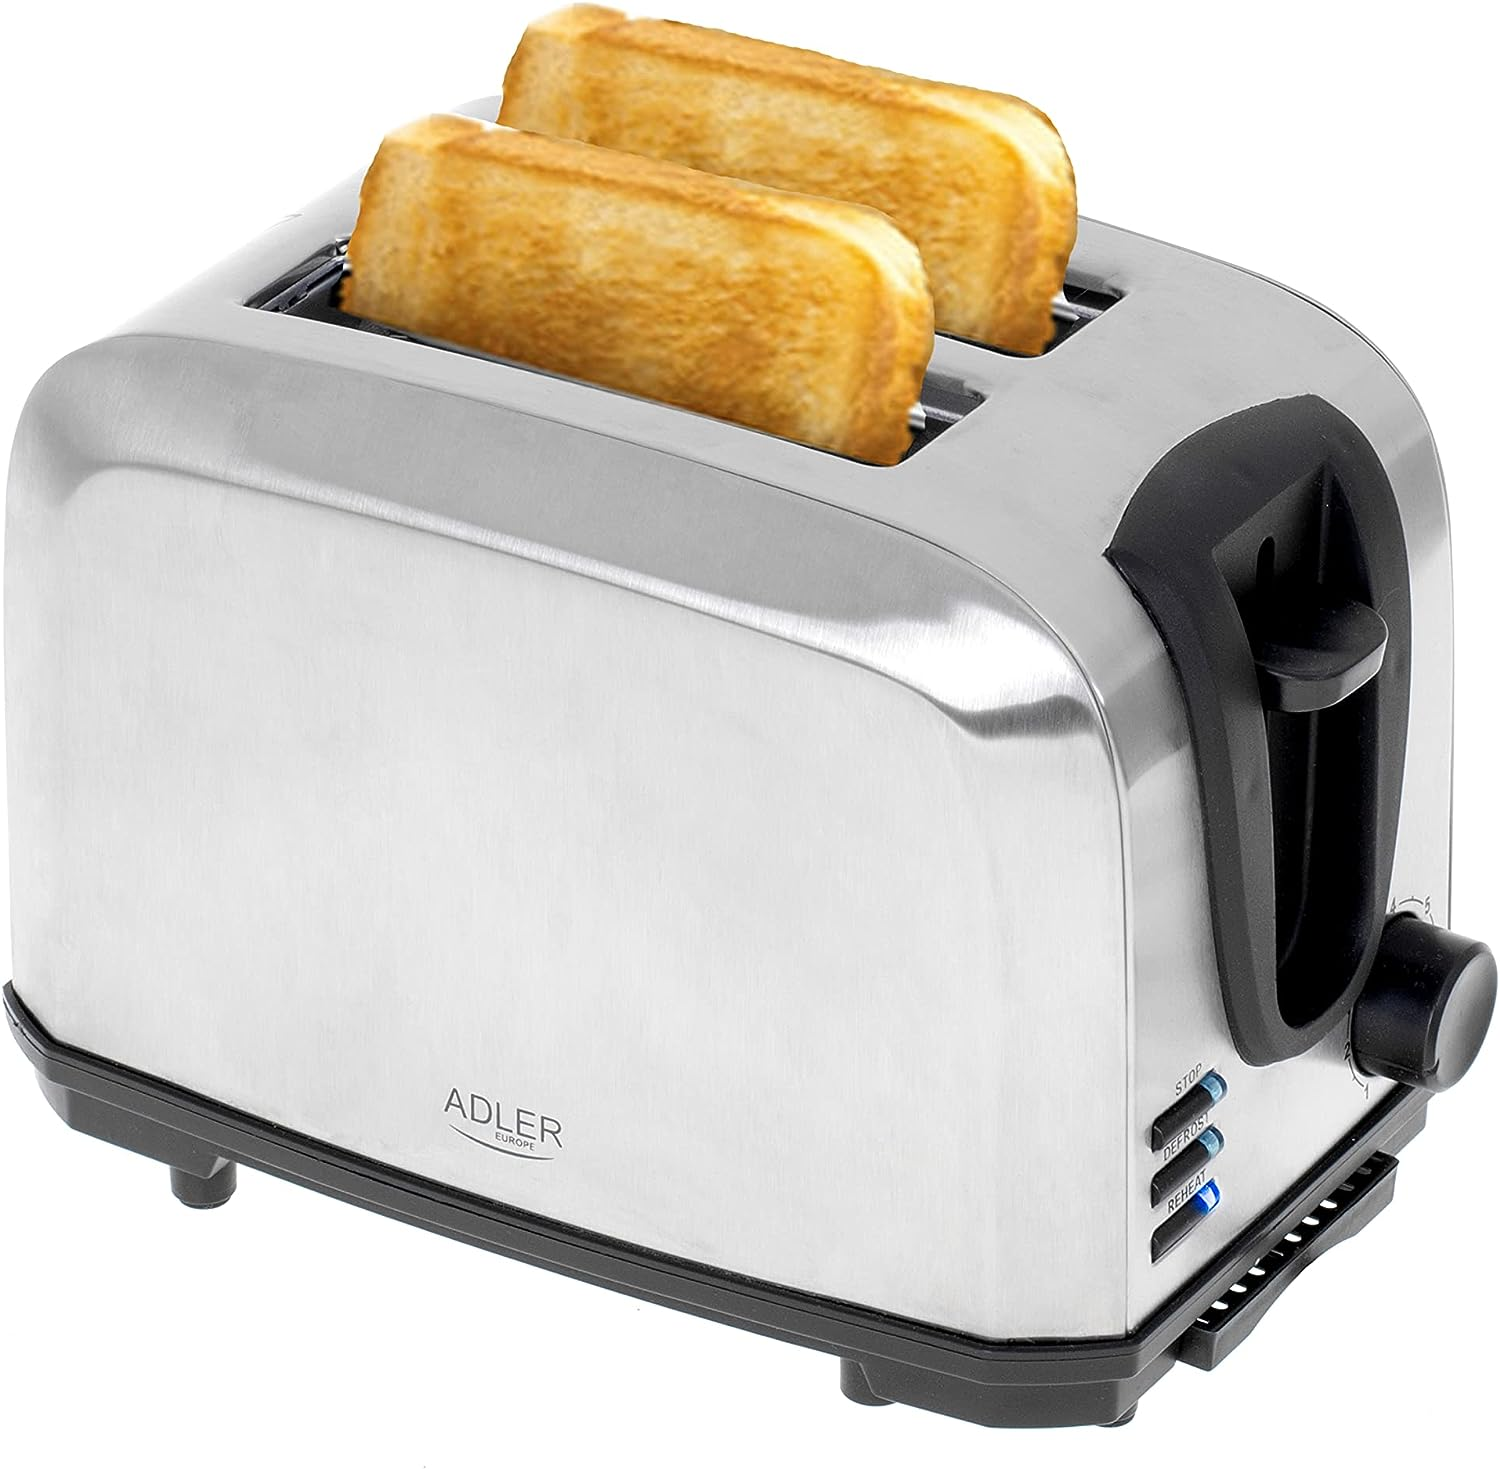 JUNG Schlitze: 3222 2) ADLER AD Watt, Toaster (1000 Silber